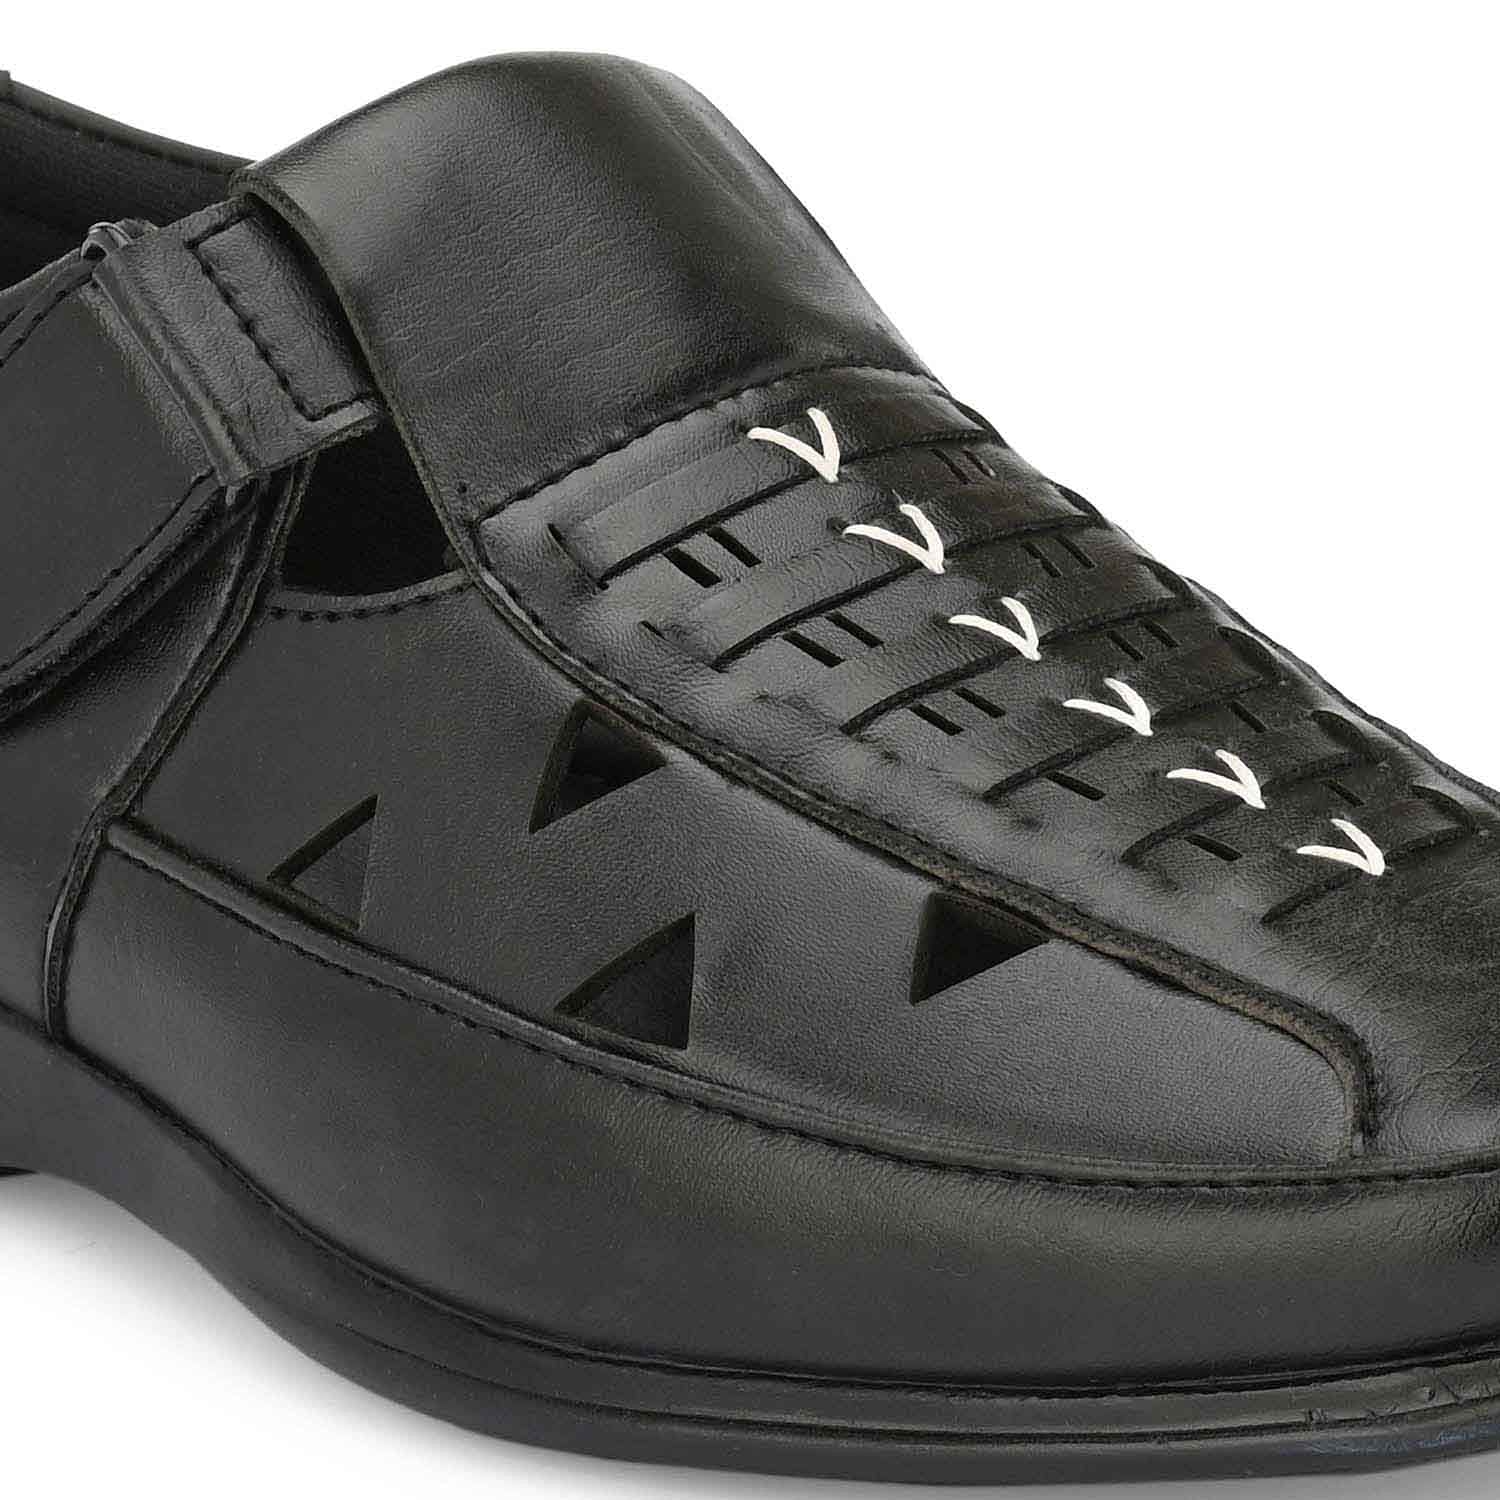 Pair-it Mn Sandals - Black-LZ-Roman-102